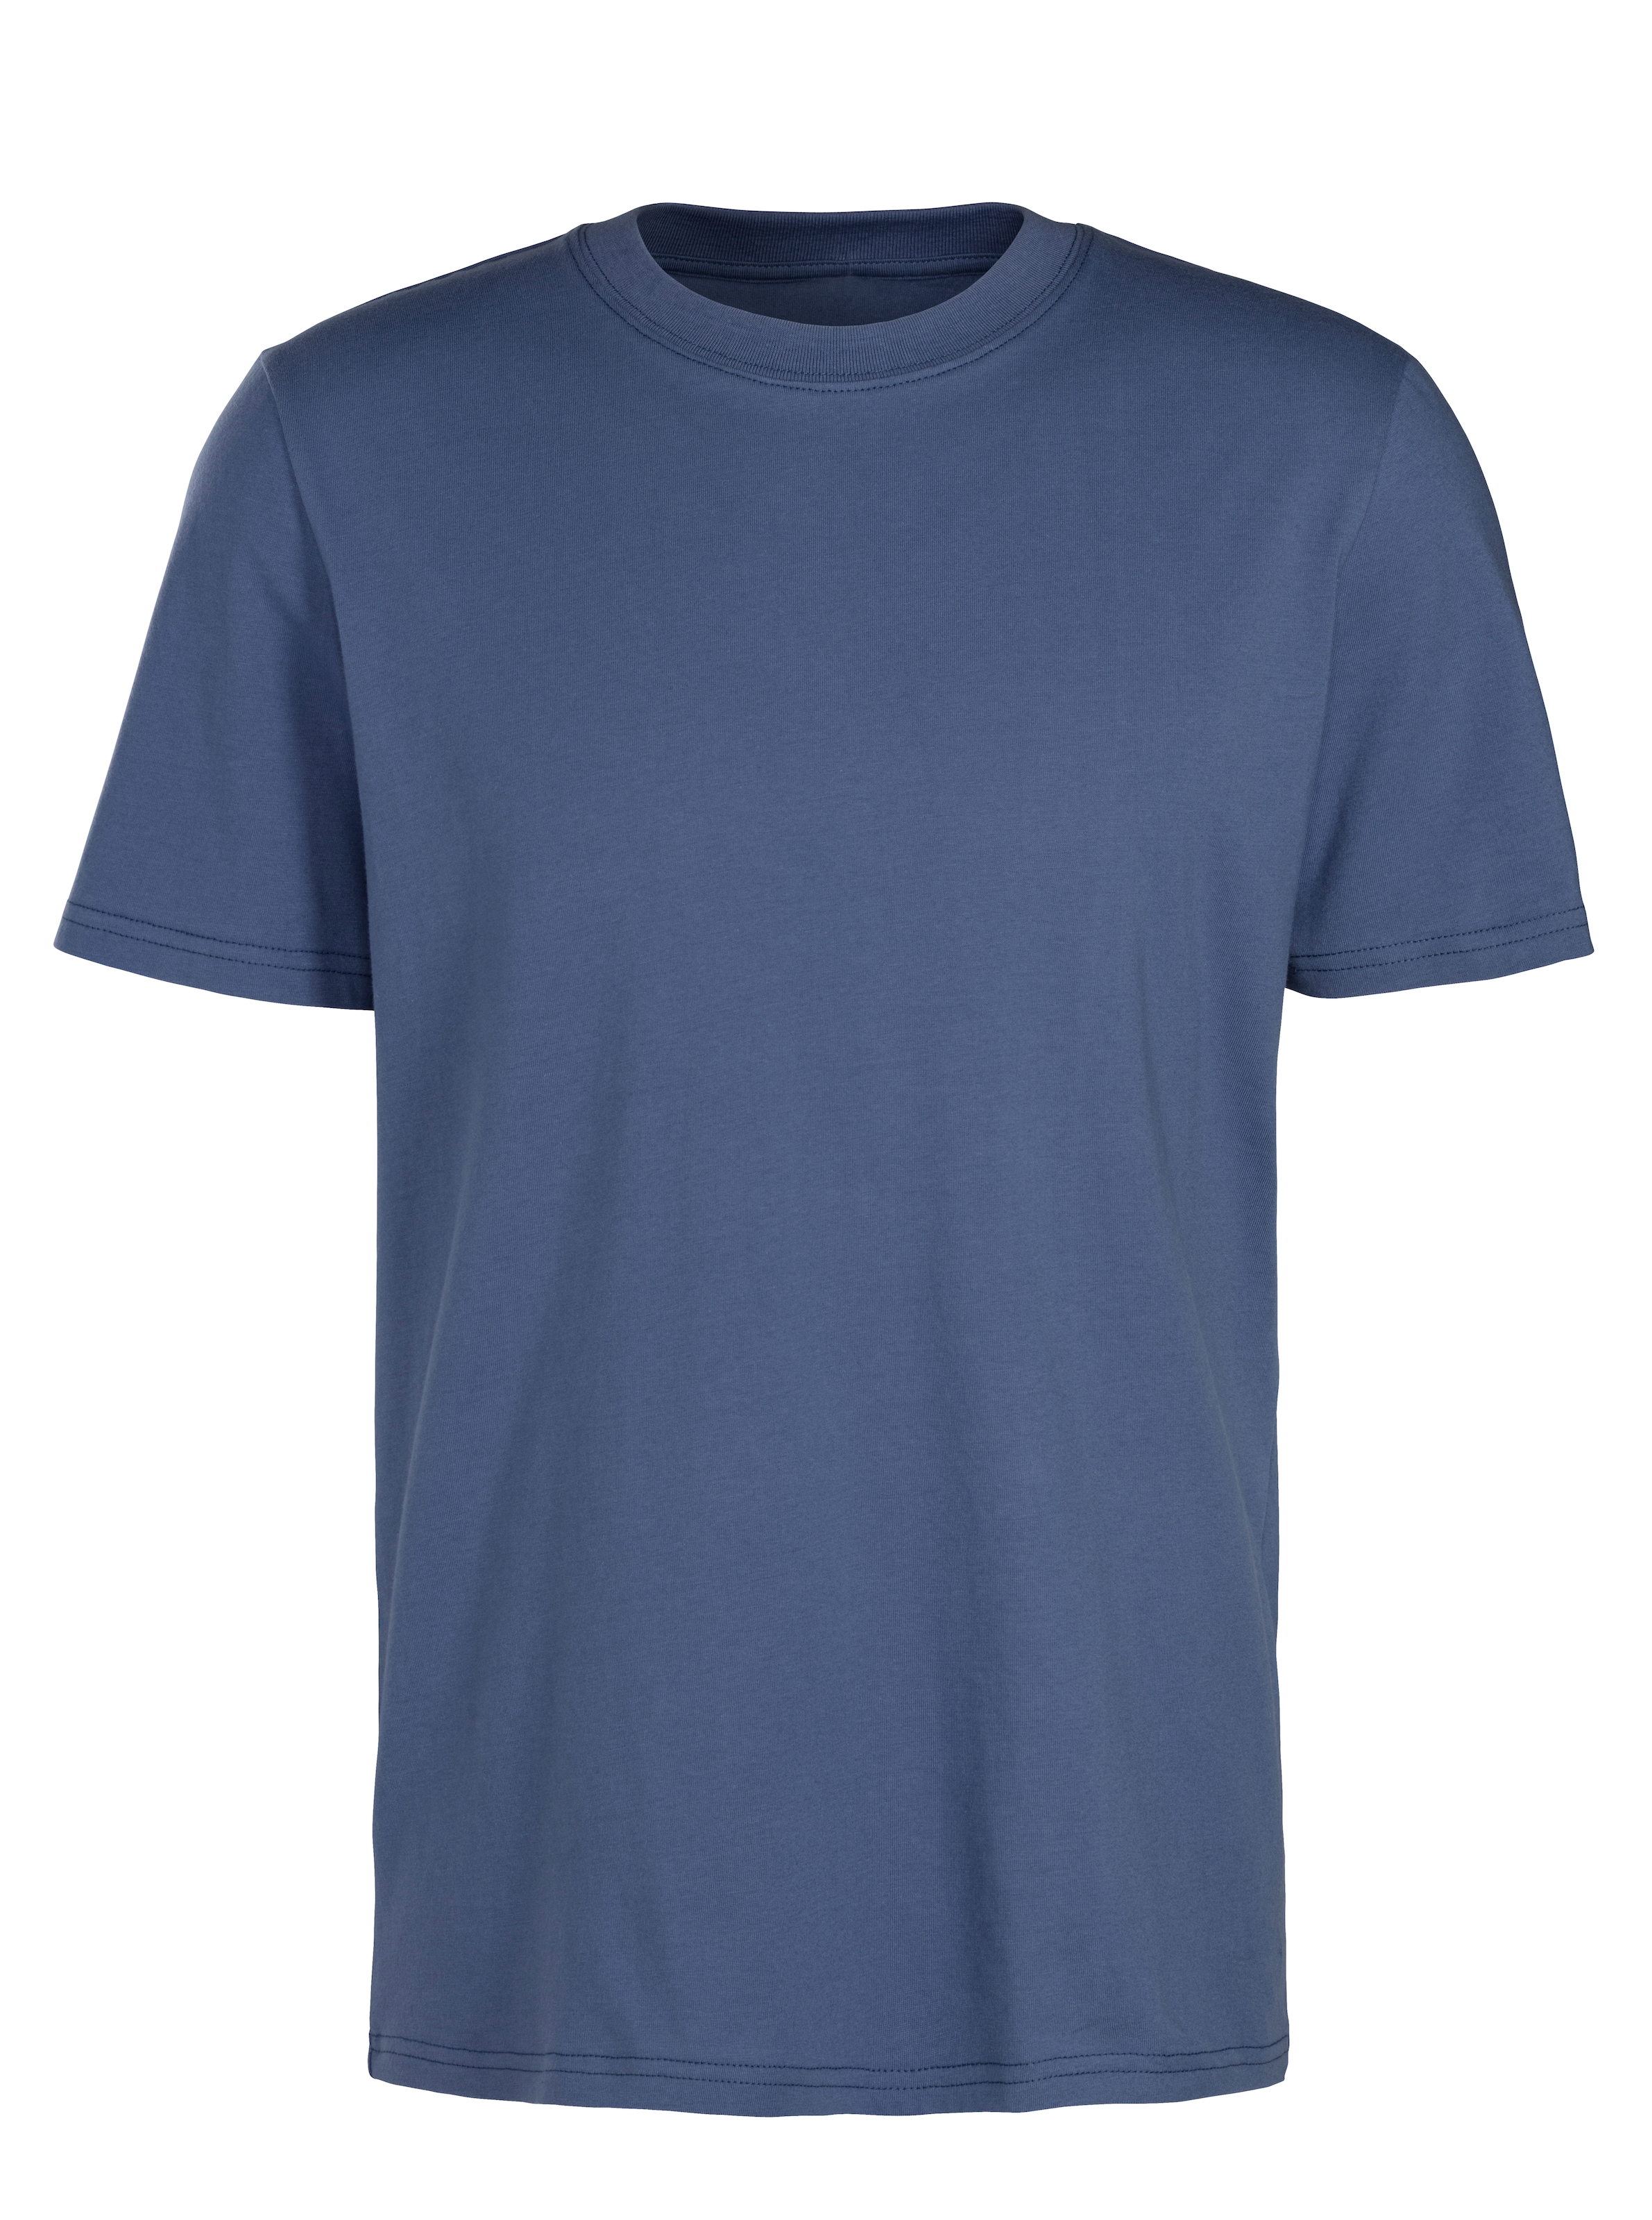 KangaROOS T-Shirt, Freizeitshirt mit Kurzarm, Rundhals aus reine Baumwolle